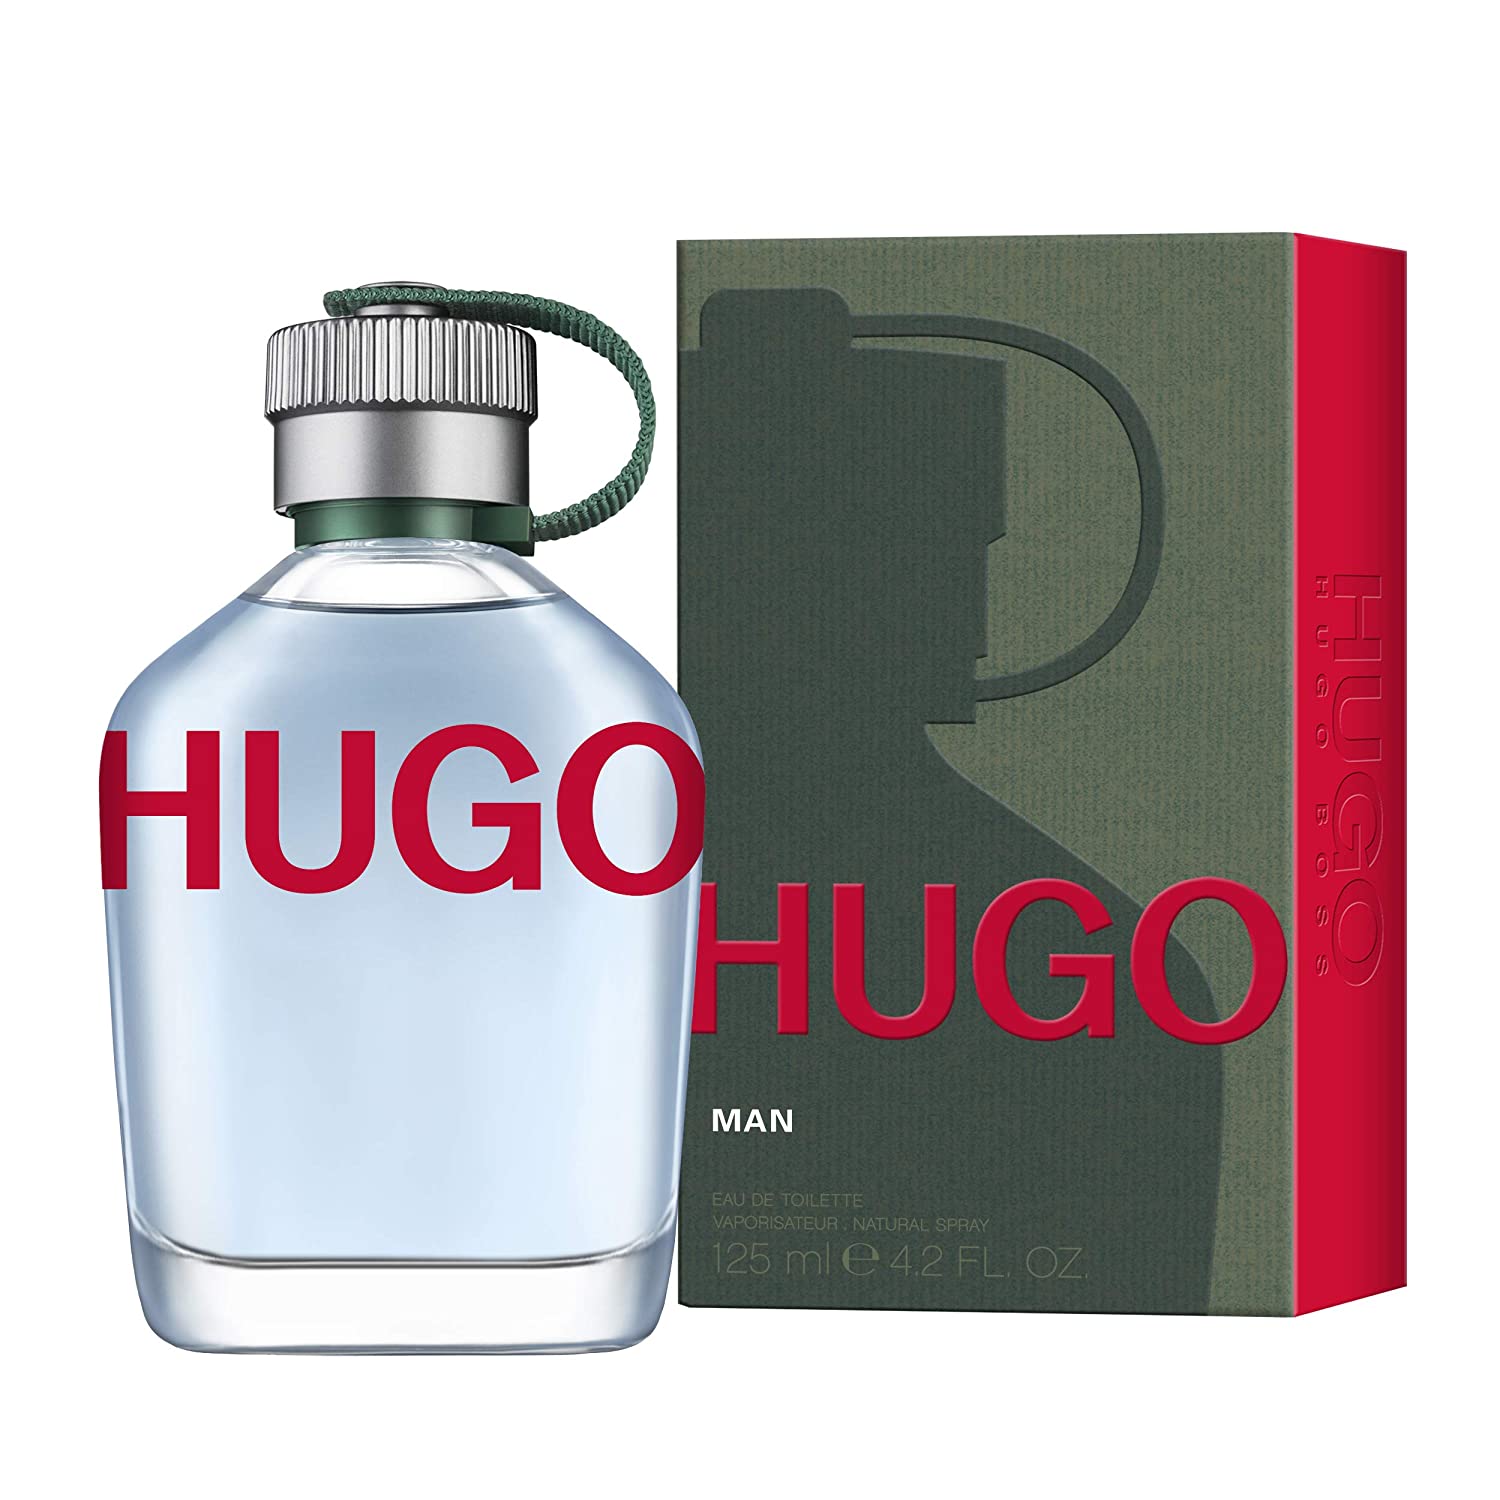 HUGO MAN Eau de Toilette di Hugo Boss ~ Nuove Fragranze